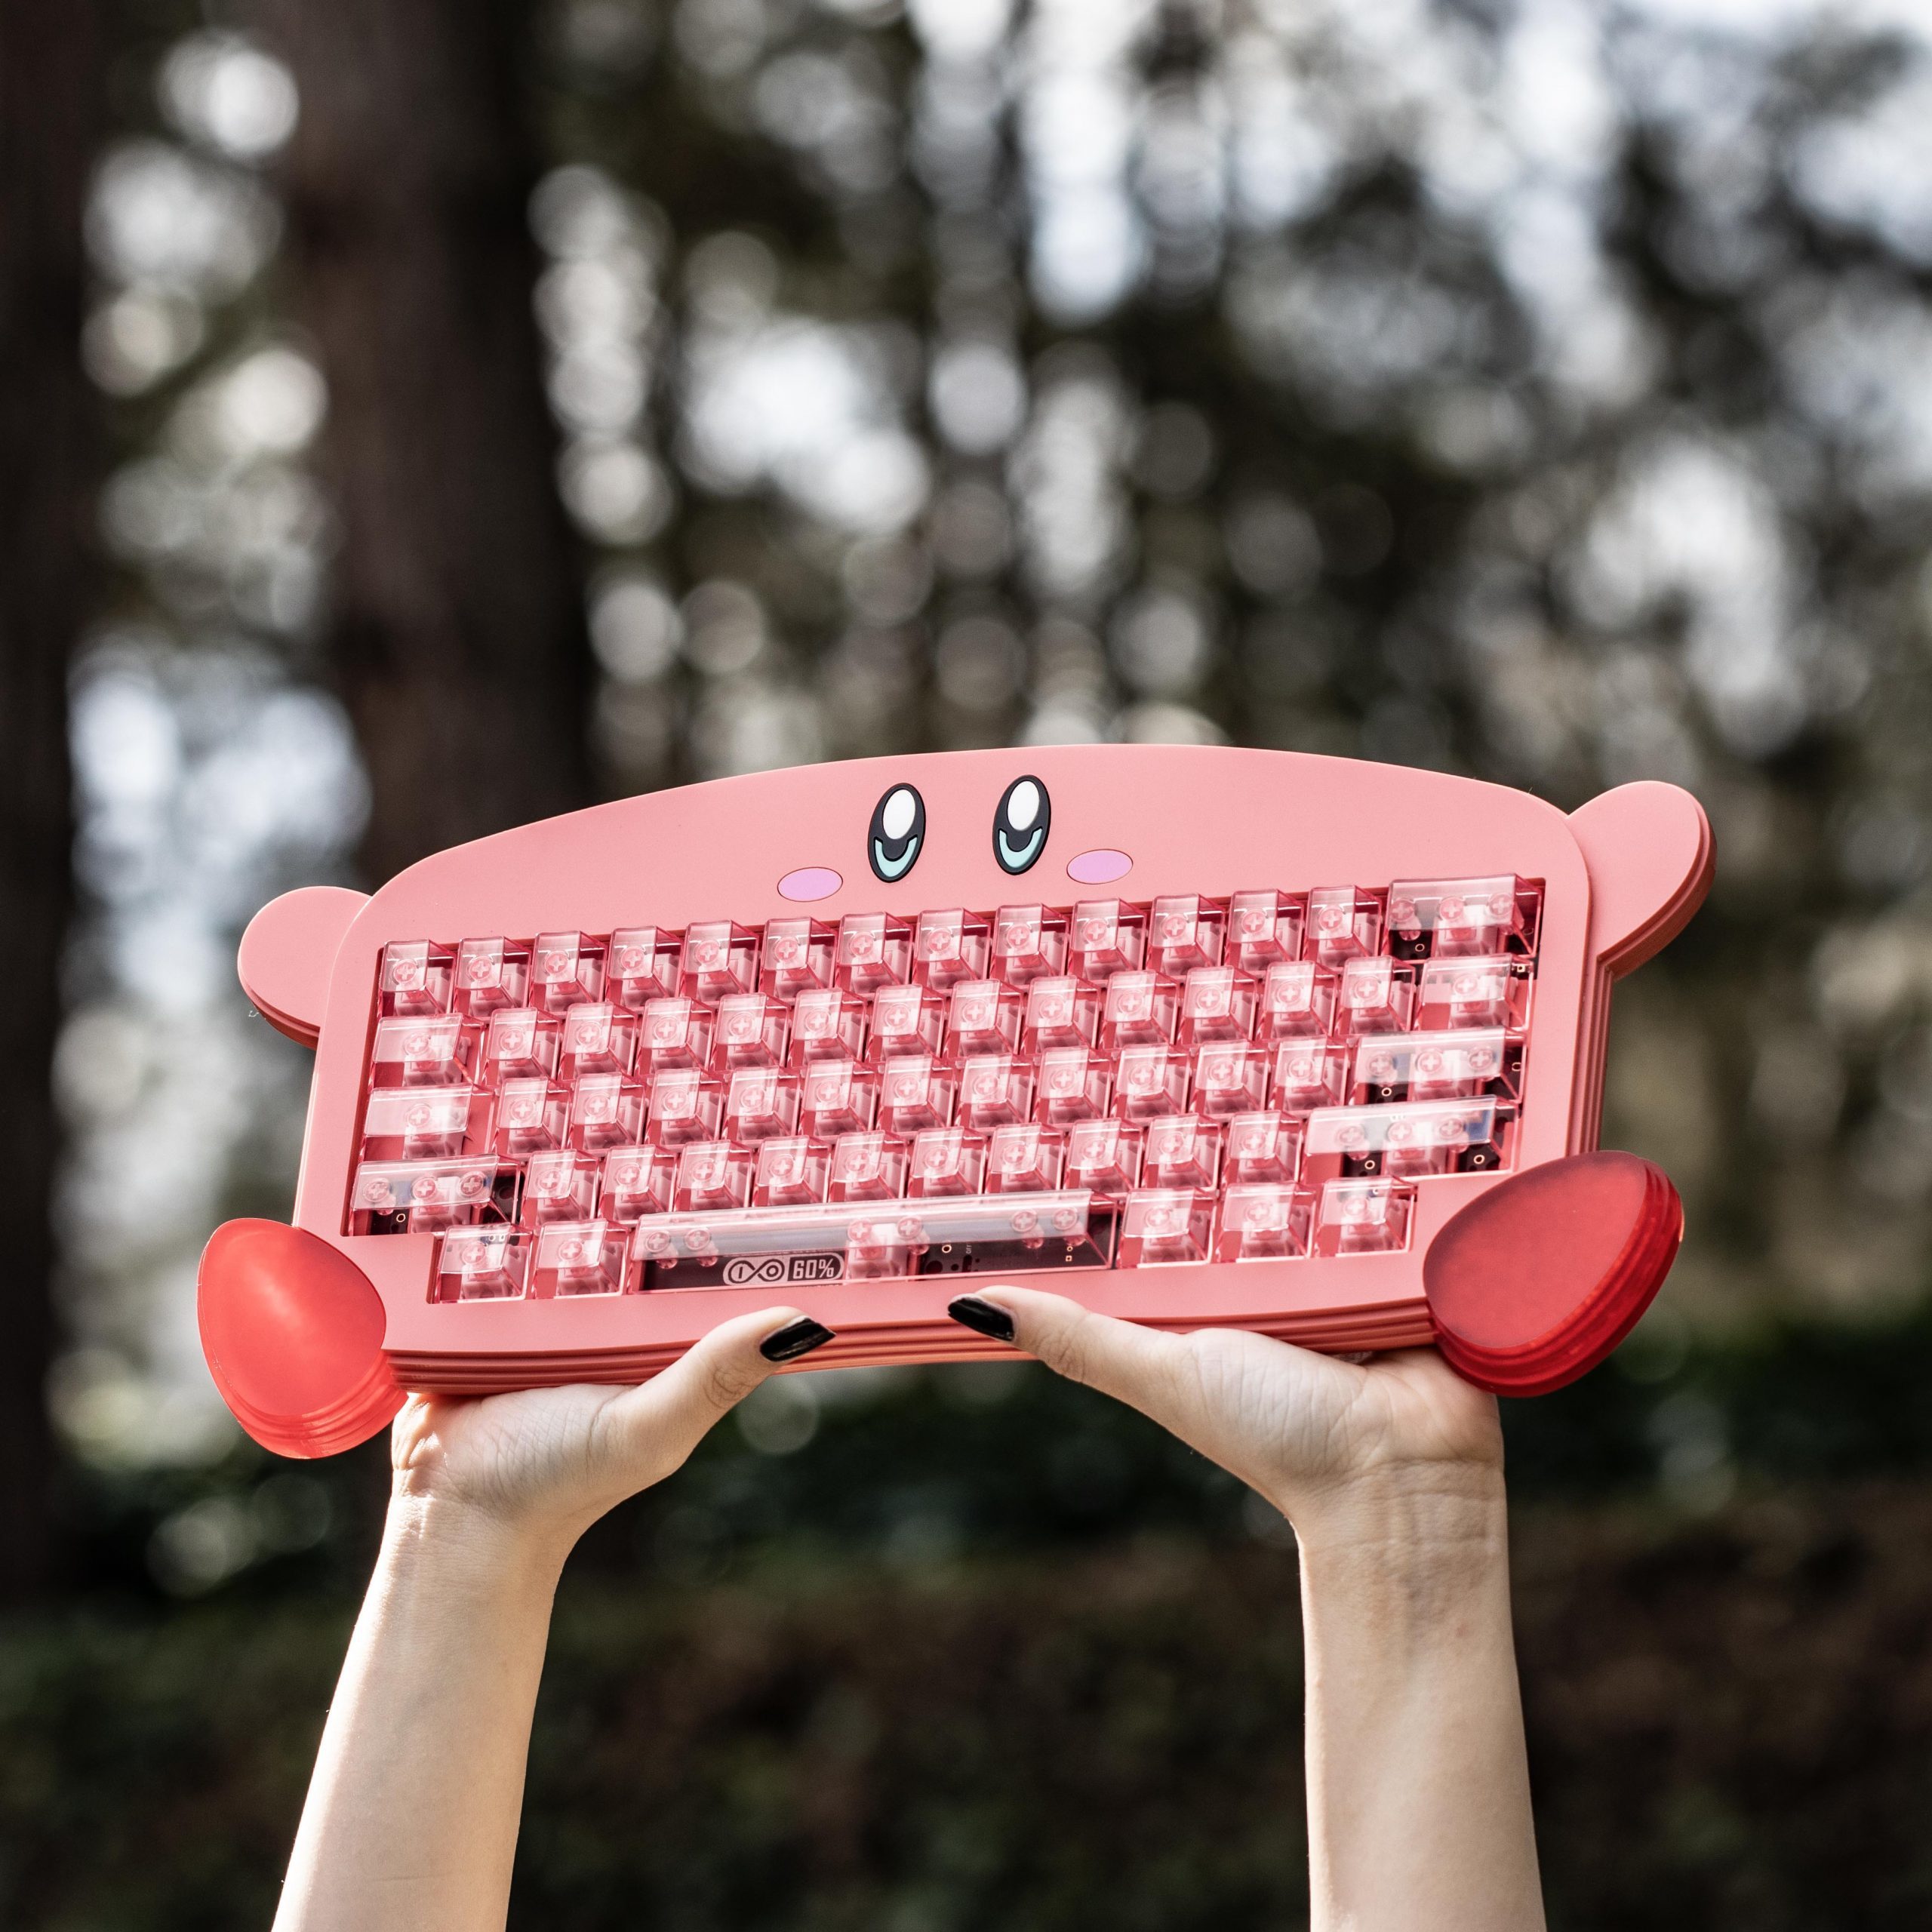 Someone Made a Custom Kirby Keyboard – Gamereactor